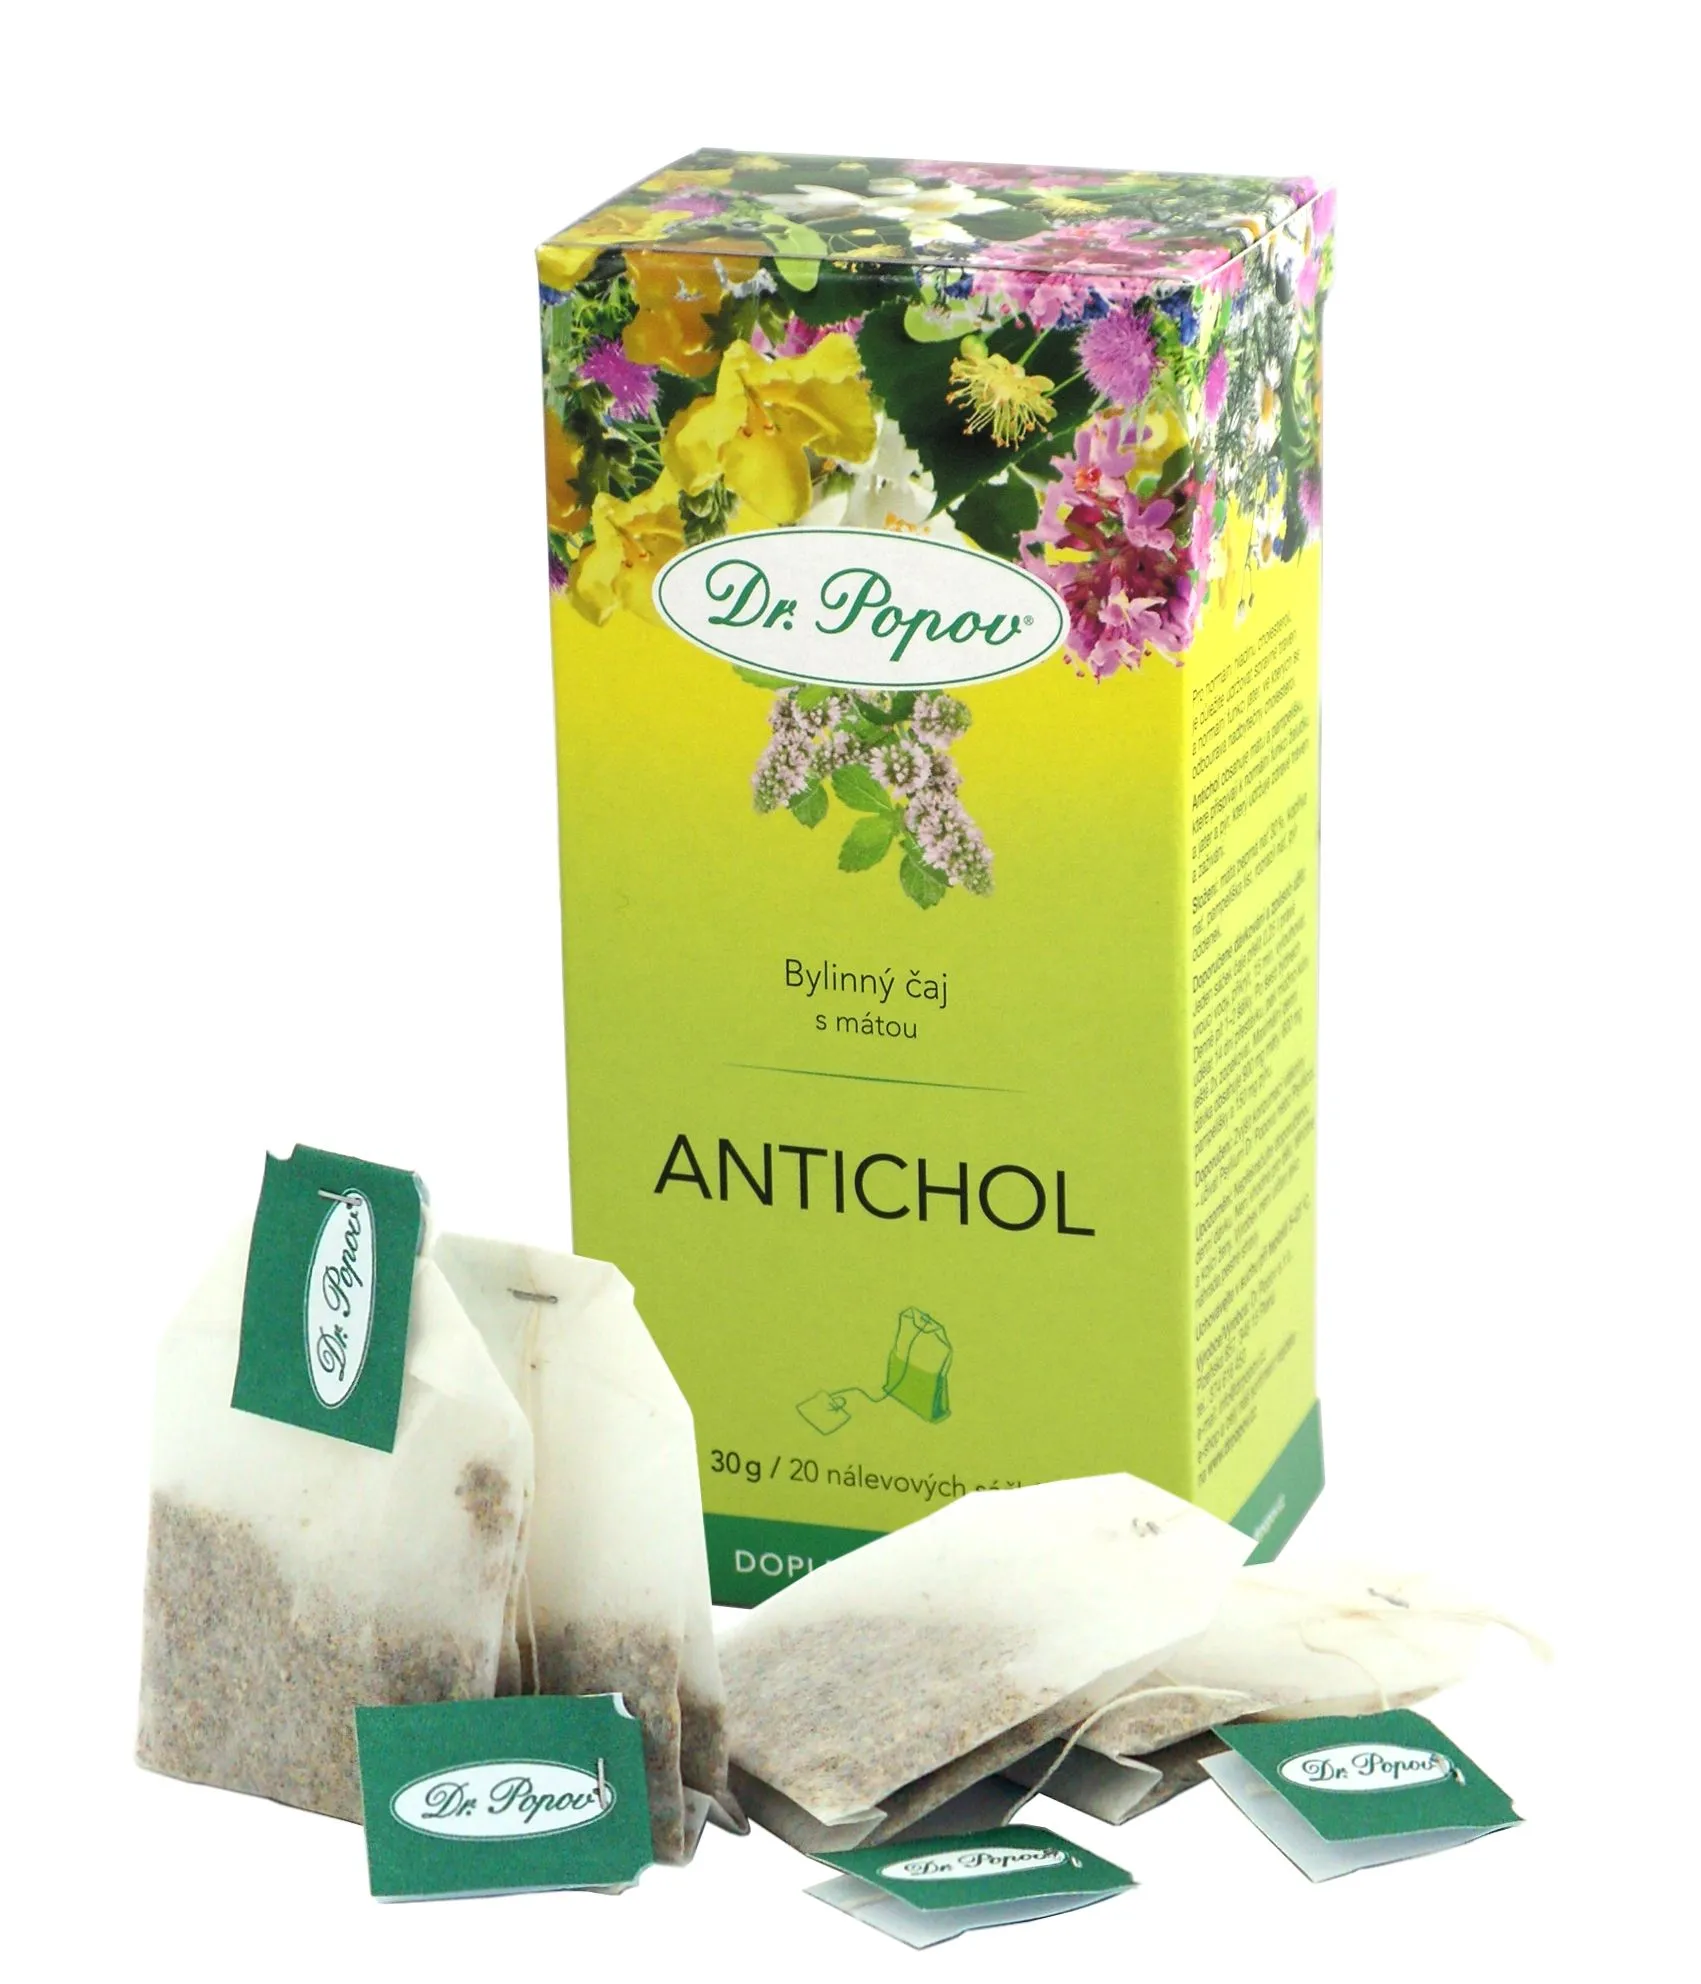 Dr. Popov Antichol tea